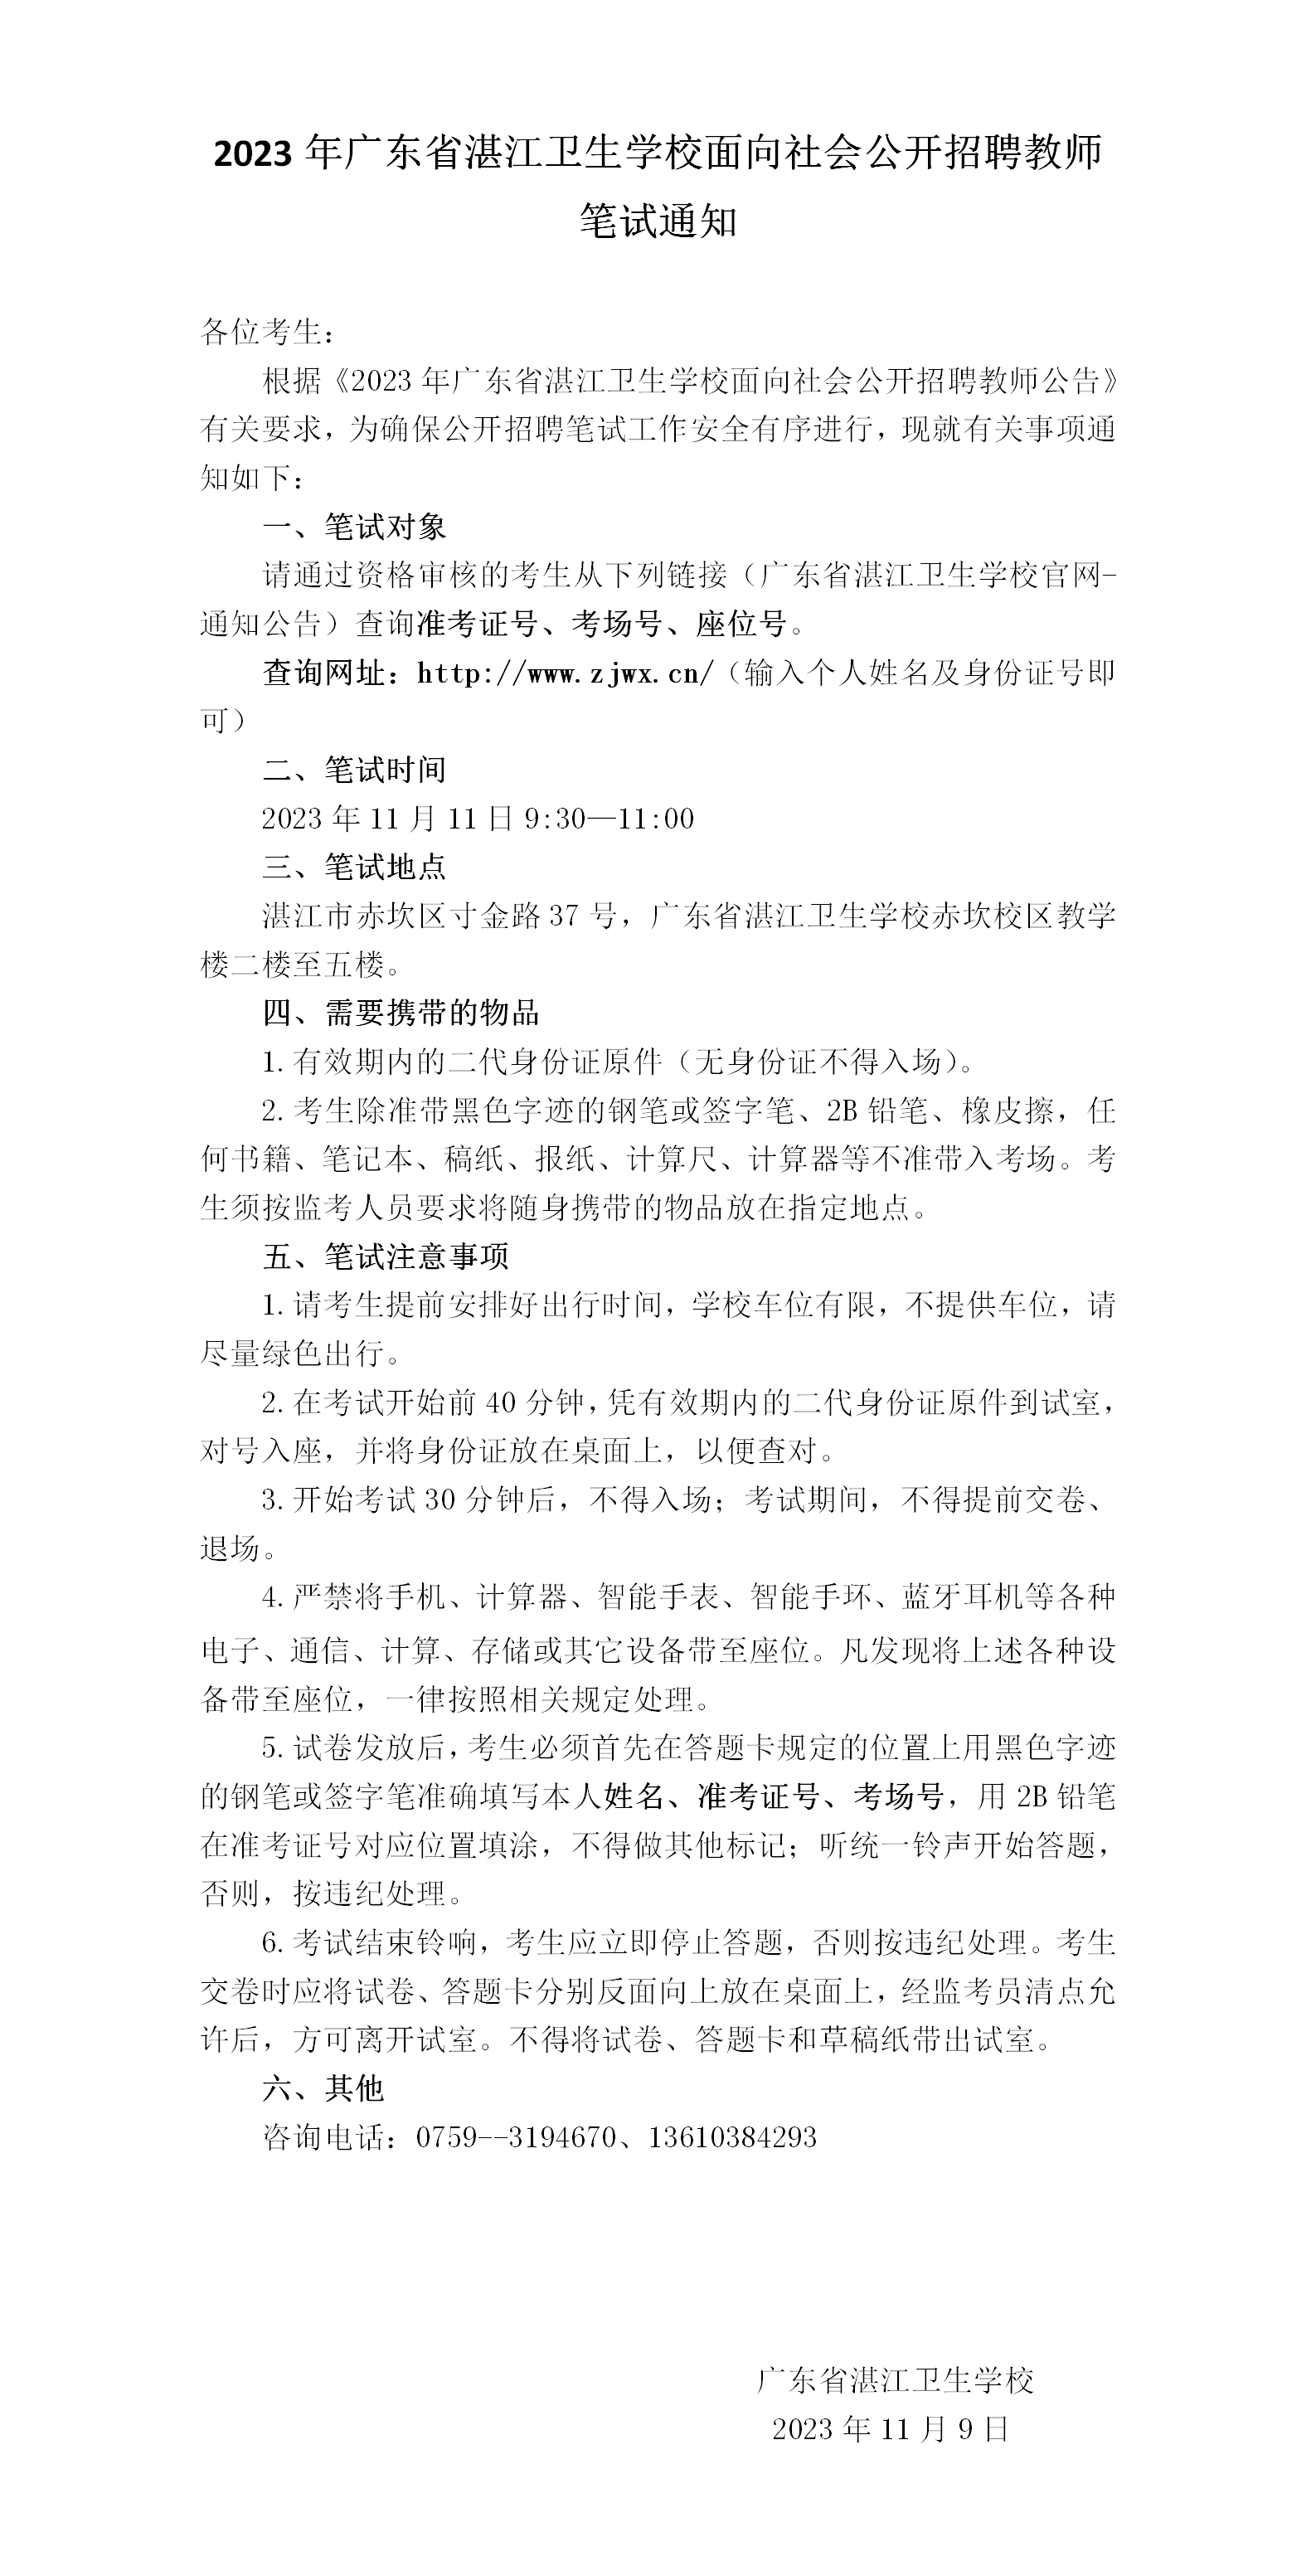 2023年广东省湛江卫生学校面向社会公开招聘教师笔试通知_01.png